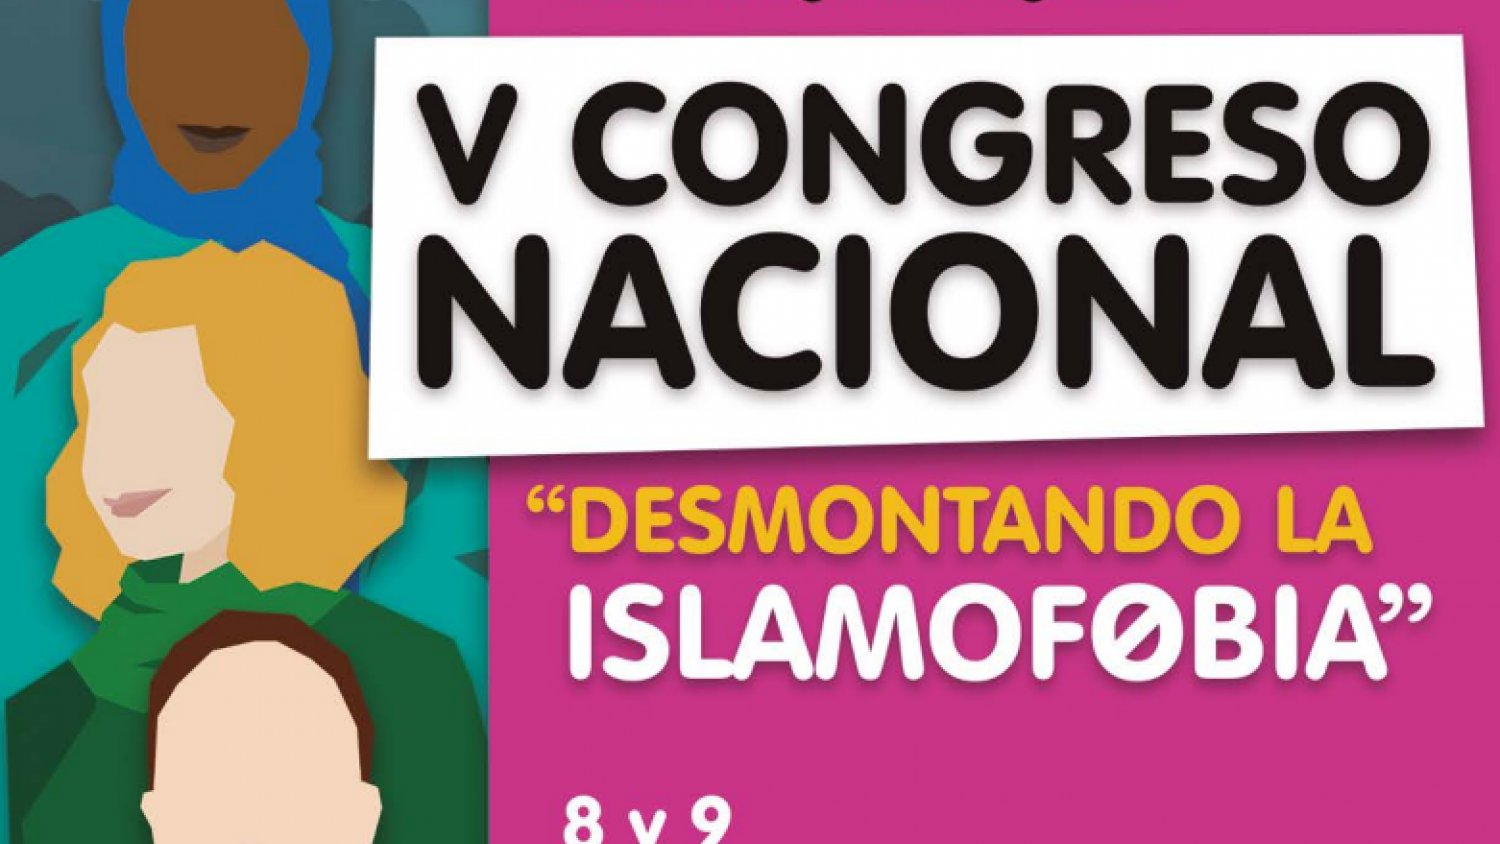 V Congreso Nacional 'Desmontando la islamofobia' del 8 al 9 de noviembre en la Universidad de Málaga 